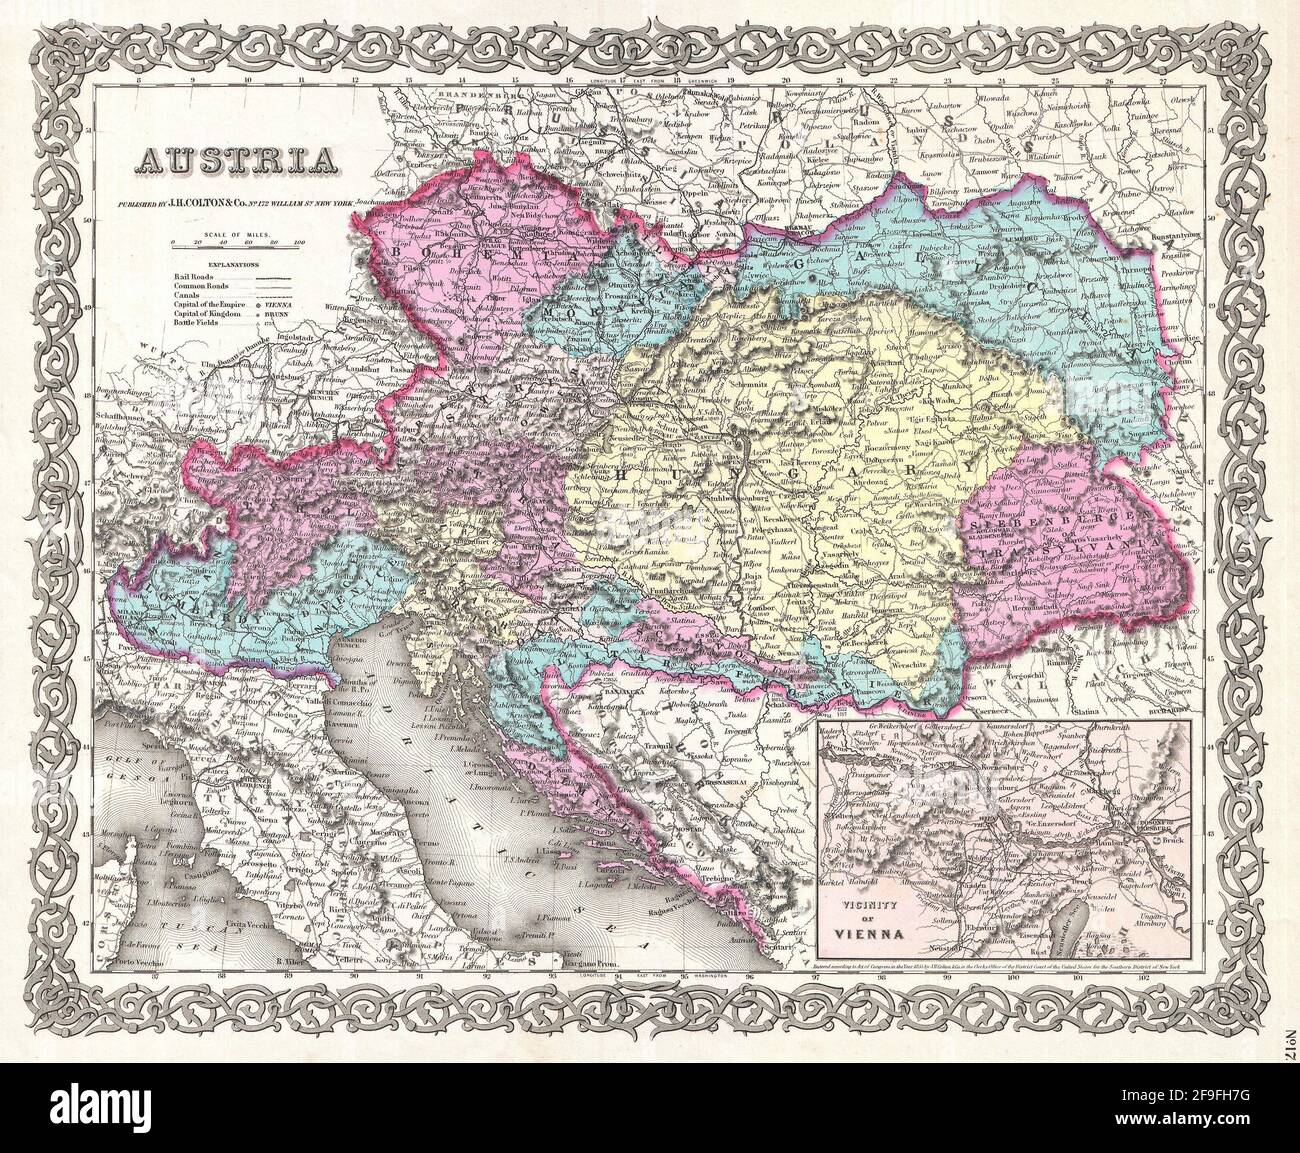 Wunderschöne, handgezeichnete Oldtimer-Karte von Colton von Österreich-Ungarn aus dem Jahr 1860 mit wunderschönen, farbenfrohen Karten und Illustrationen von Ländern, Regionen und Ozeanen Stockfoto